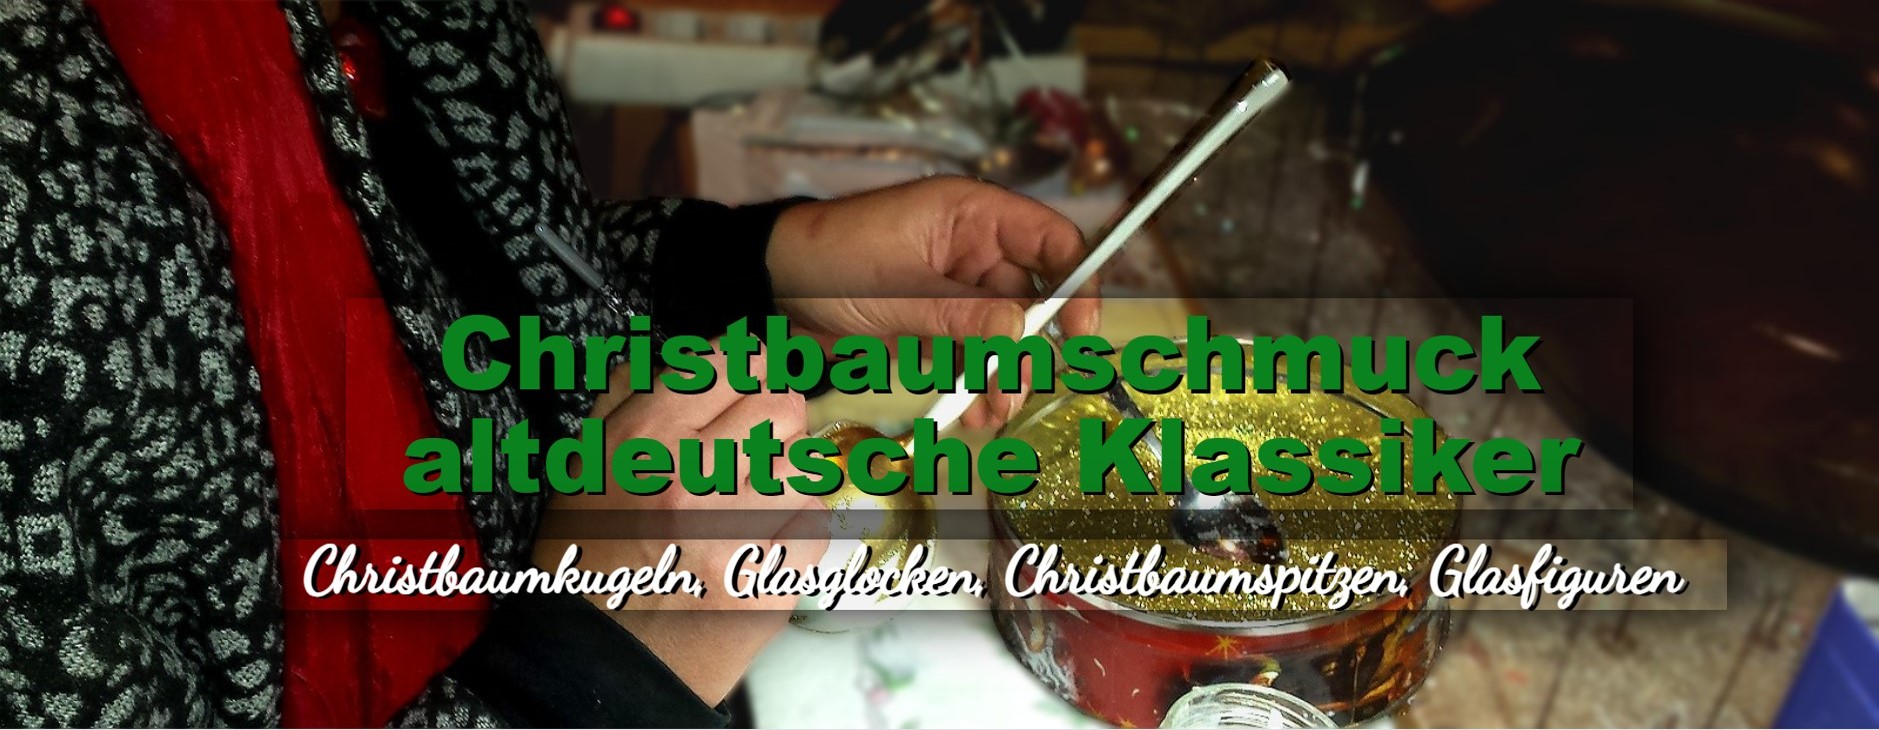 Christbaumschmuck Christbaumkugeln Christbaumspitzen Glasglocken Glasfiguren aus Lauschaer Glas